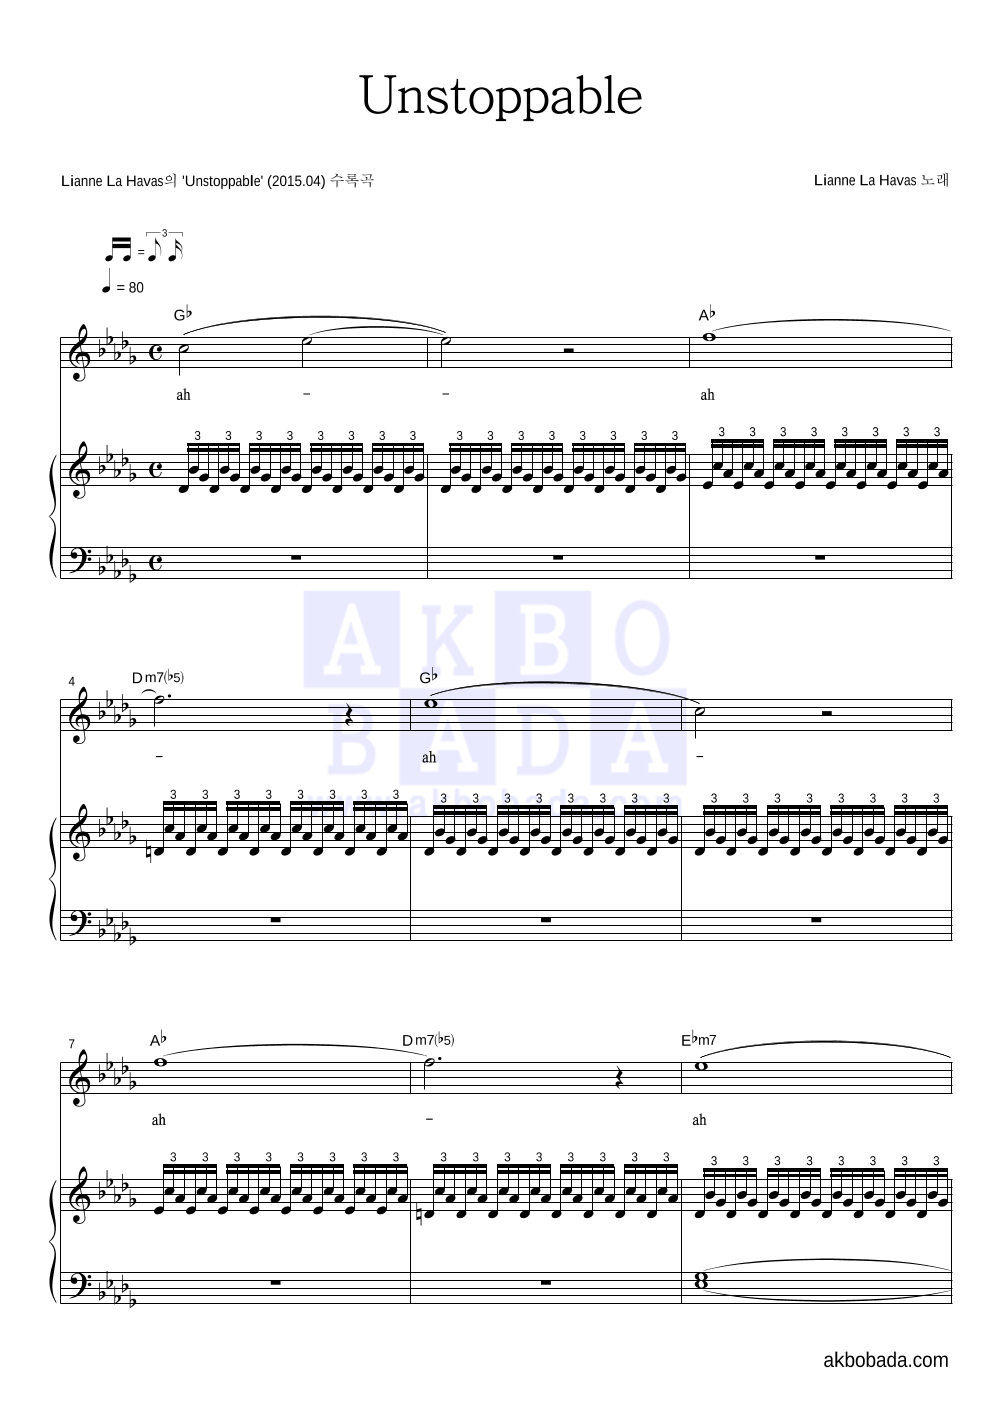 Lianne La Havas - Unstoppable 피아노 3단 악보 